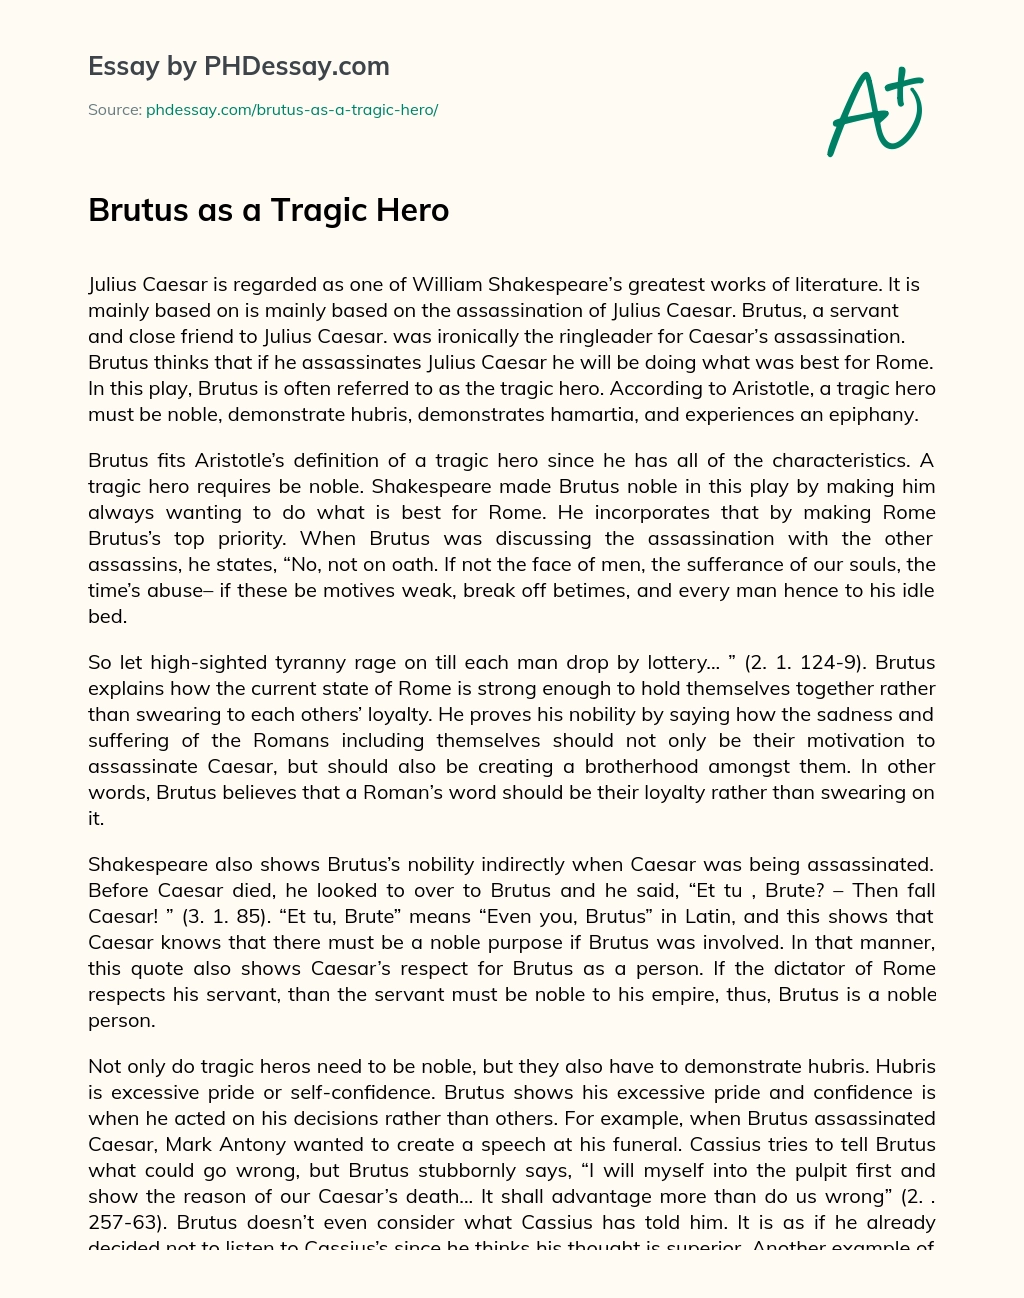 Brutus as a Tragic Hero essay